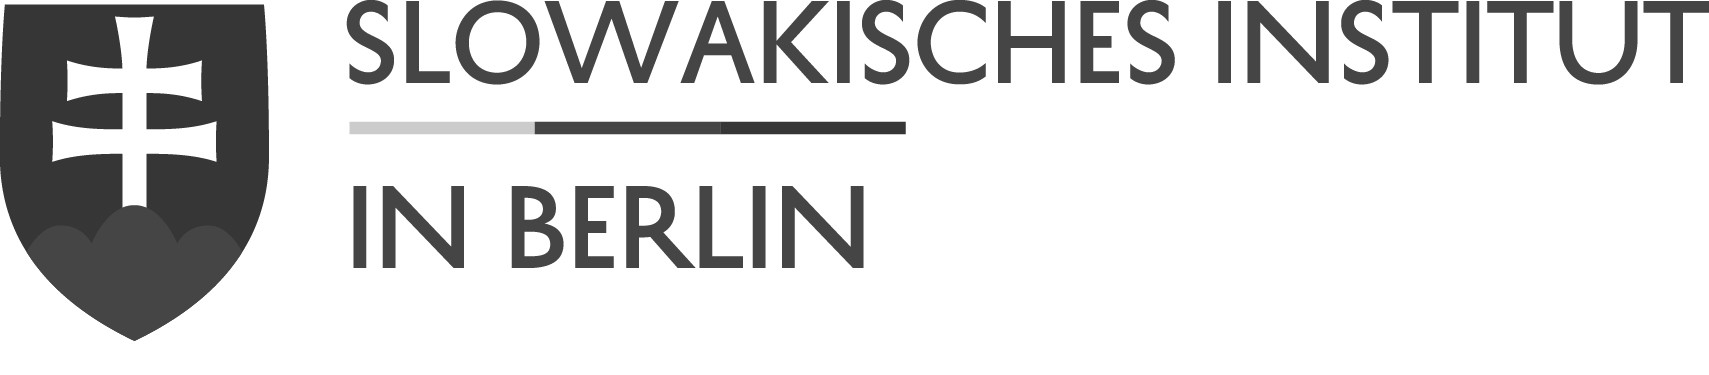 Slowakisches Institut Berlin DE graustufen